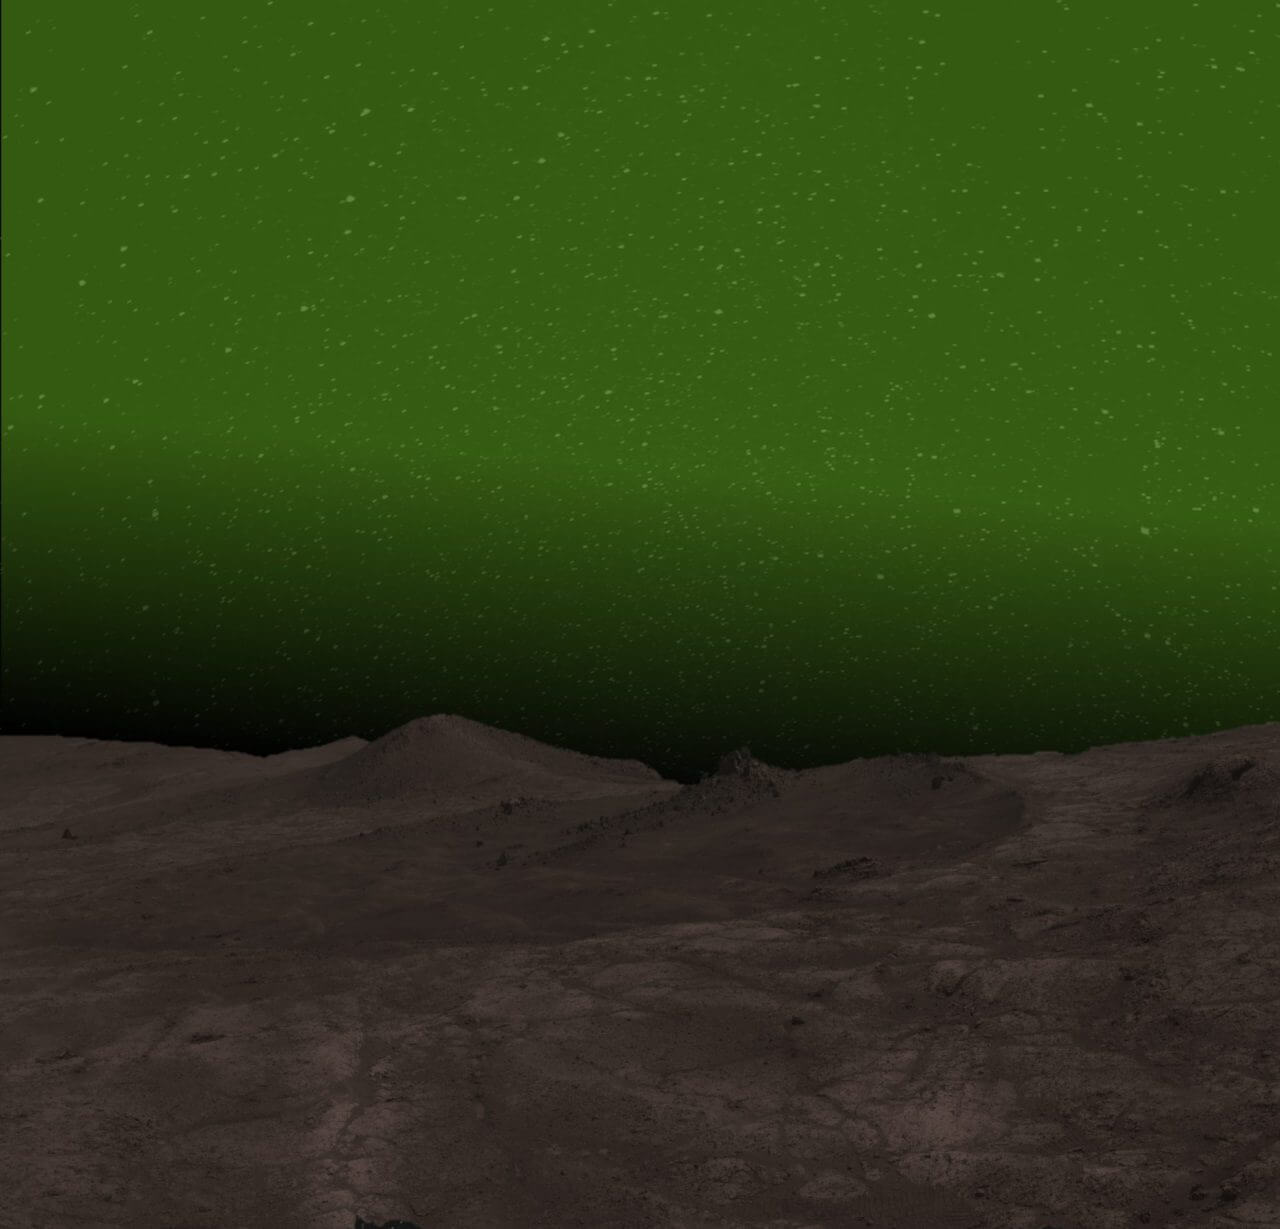 【▲図1: 今回観測された火星の大気光を地上から見た時の想像図。条件が良ければ、夜空が緑色に見えるほど明るいと推定されています。 (Image Credit:NASA, JPL-Caltech, Cornell University & Arizona State University– E. W. Knutsen) 】